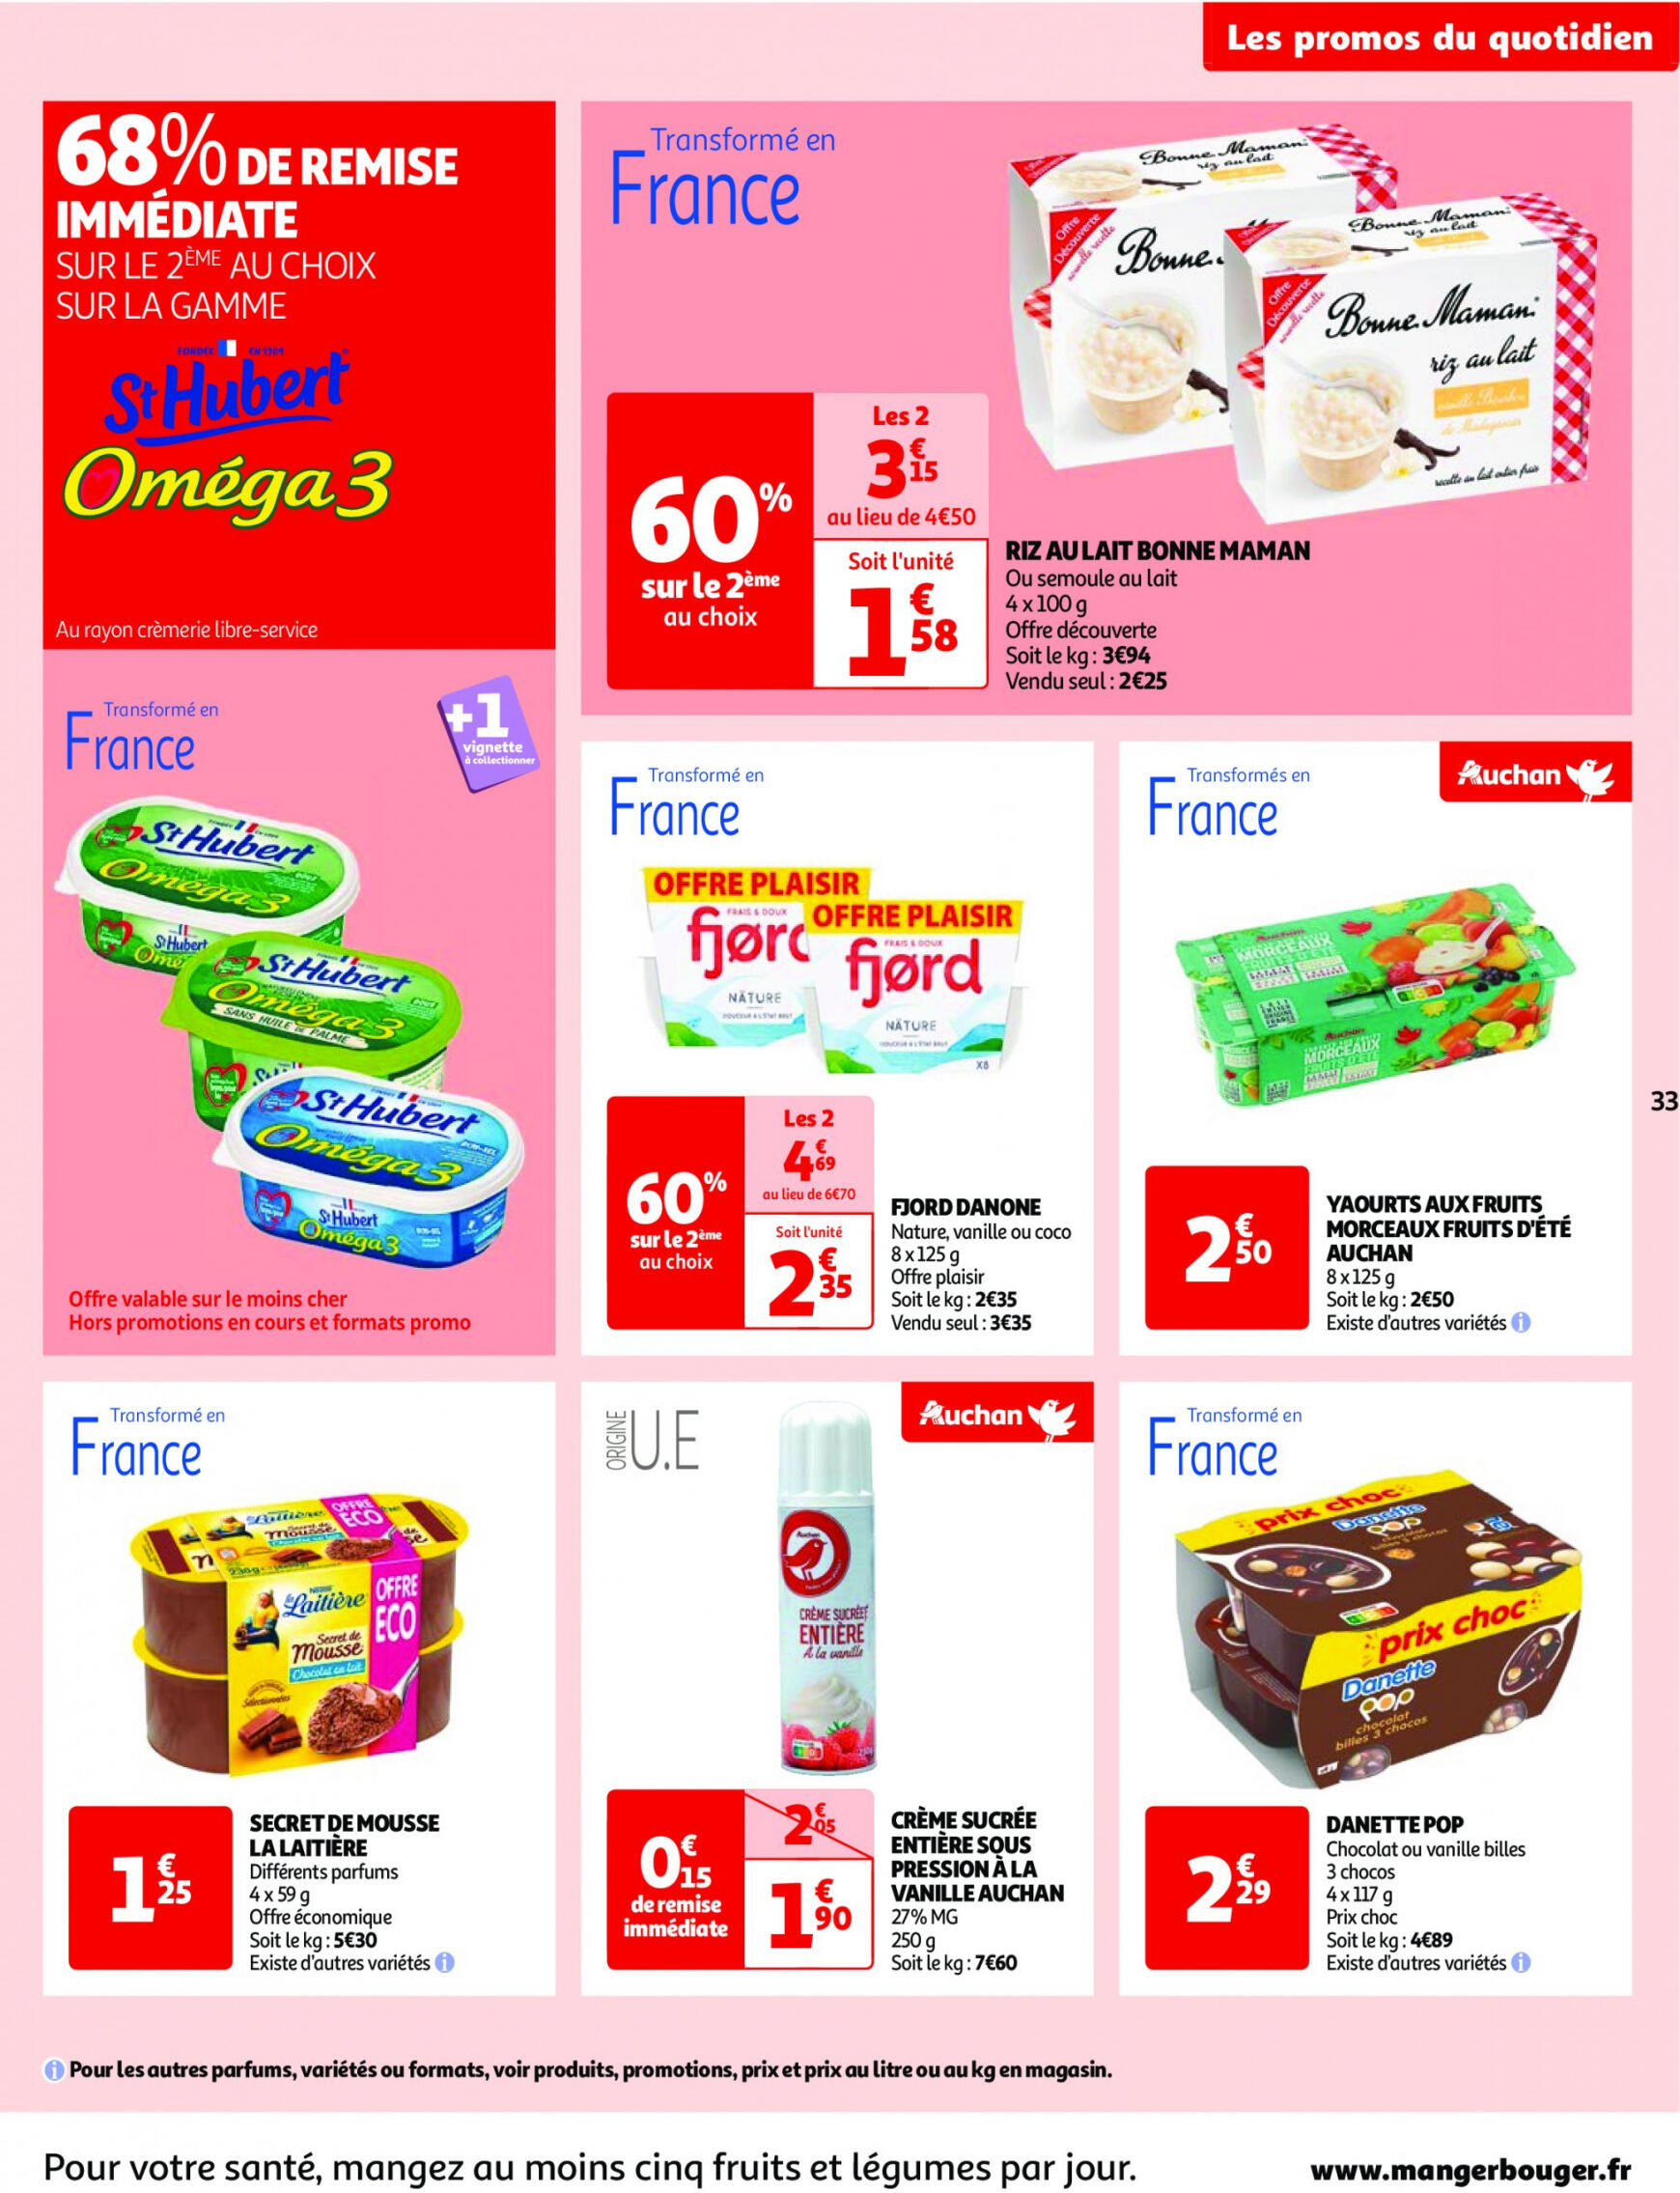 auchan - Auchan - Nos surgelés ont tout bon folder huidig 14.05. - 21.05. - page: 33